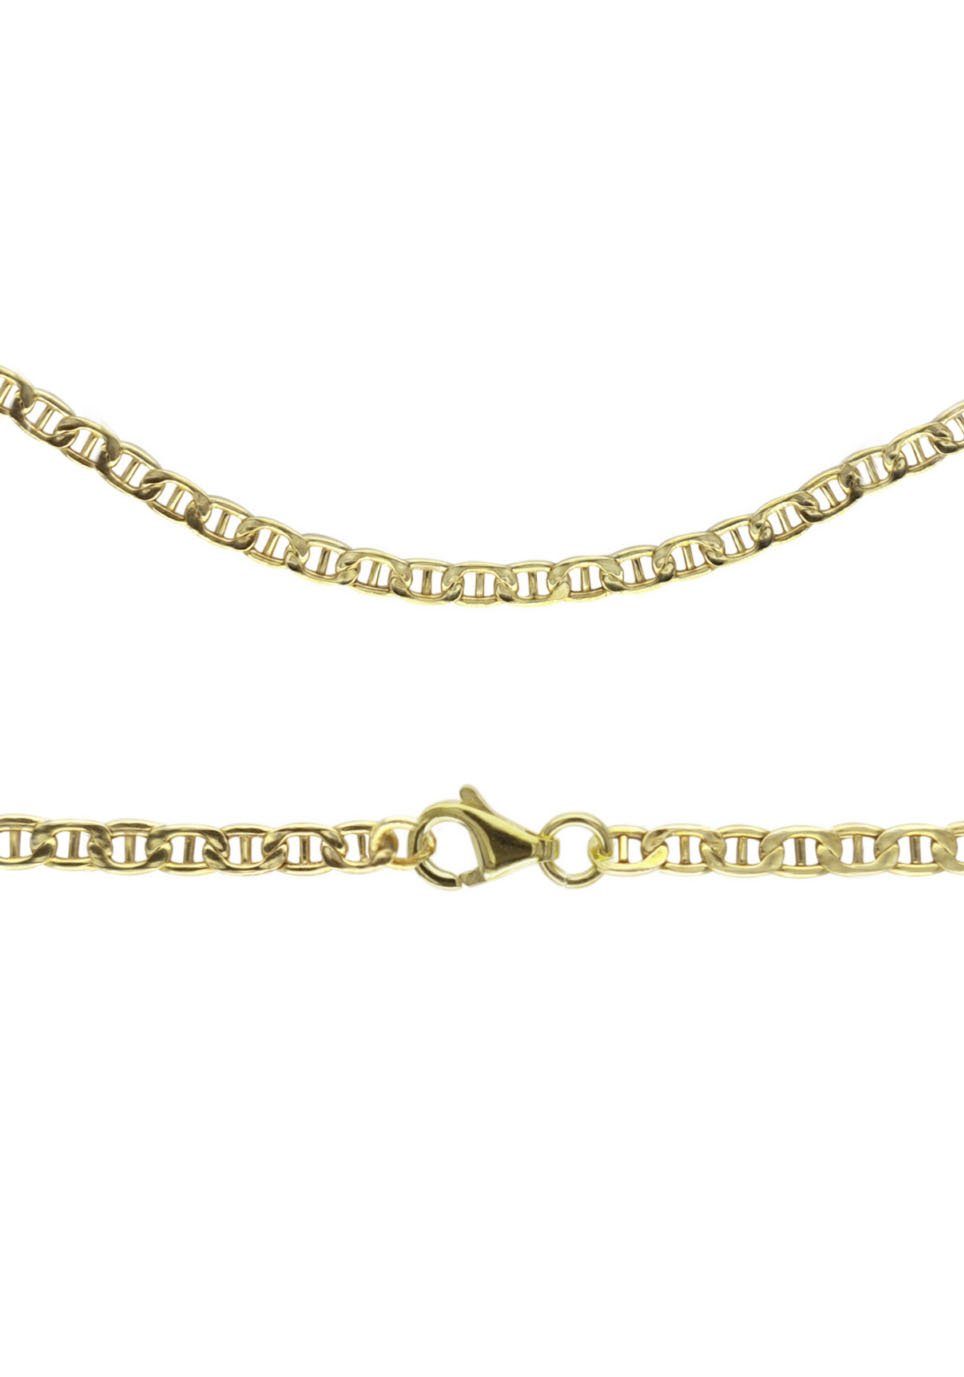 Firetti Goldkette Schmuck Geschenk Gold 333 Halskette Stegpanzerkette, zu Hoodie, Kleid, Shirt, Jeans, Sneaker! Anlass Geburtstag Weihnachten | Ketten ohne Anhänger